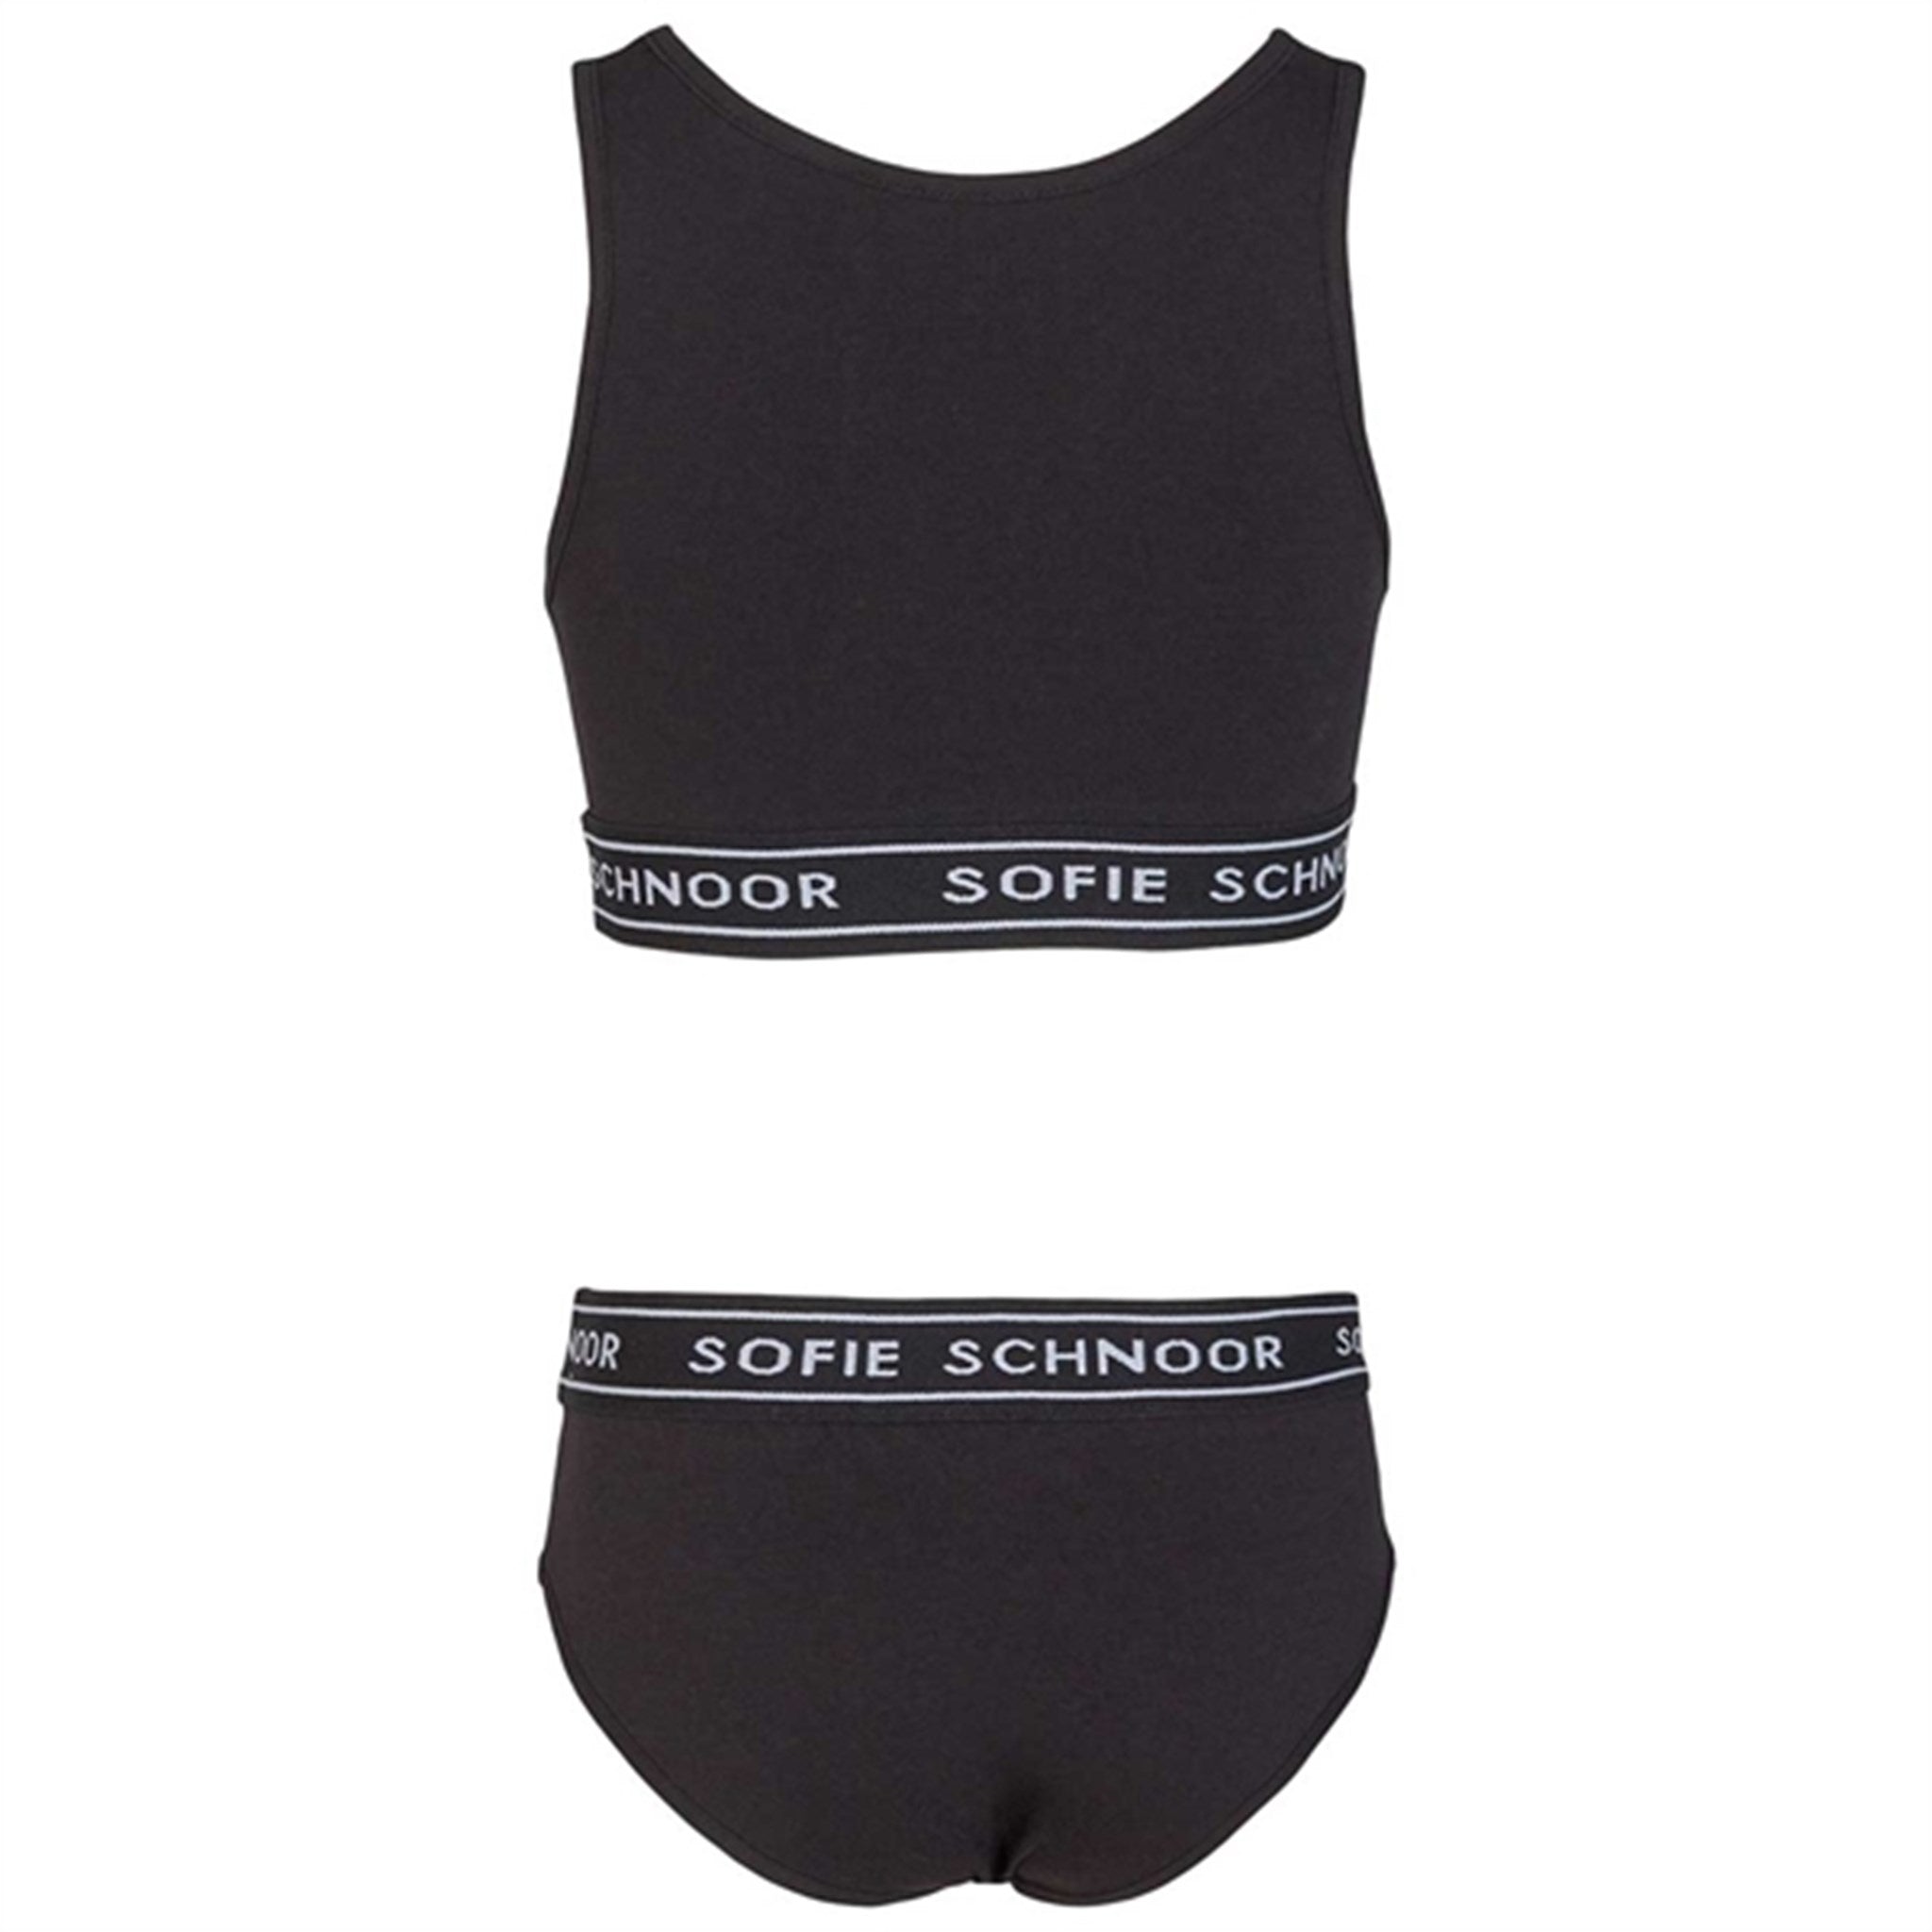 Sofie Schnoor Black Noos Underkläder 2